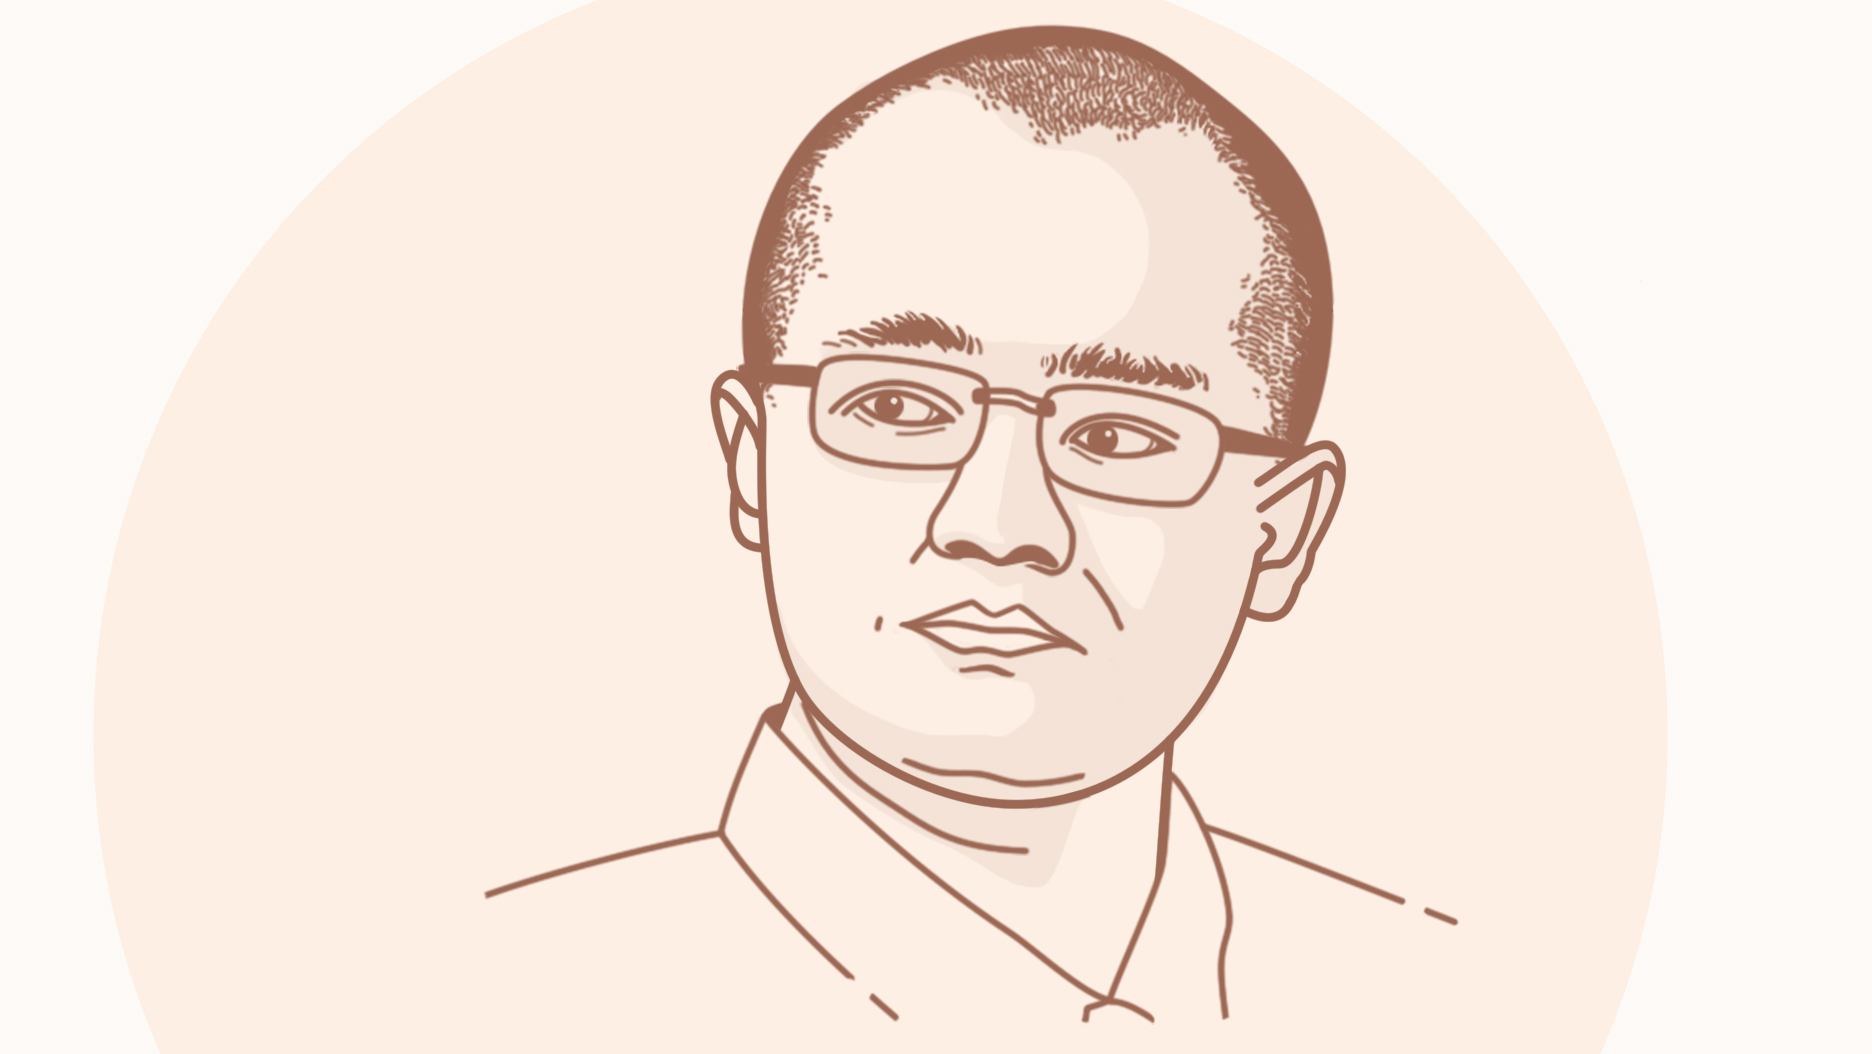 Meituan-Dianping’s Wang Xing: From struggling copycat to IPO billionaire